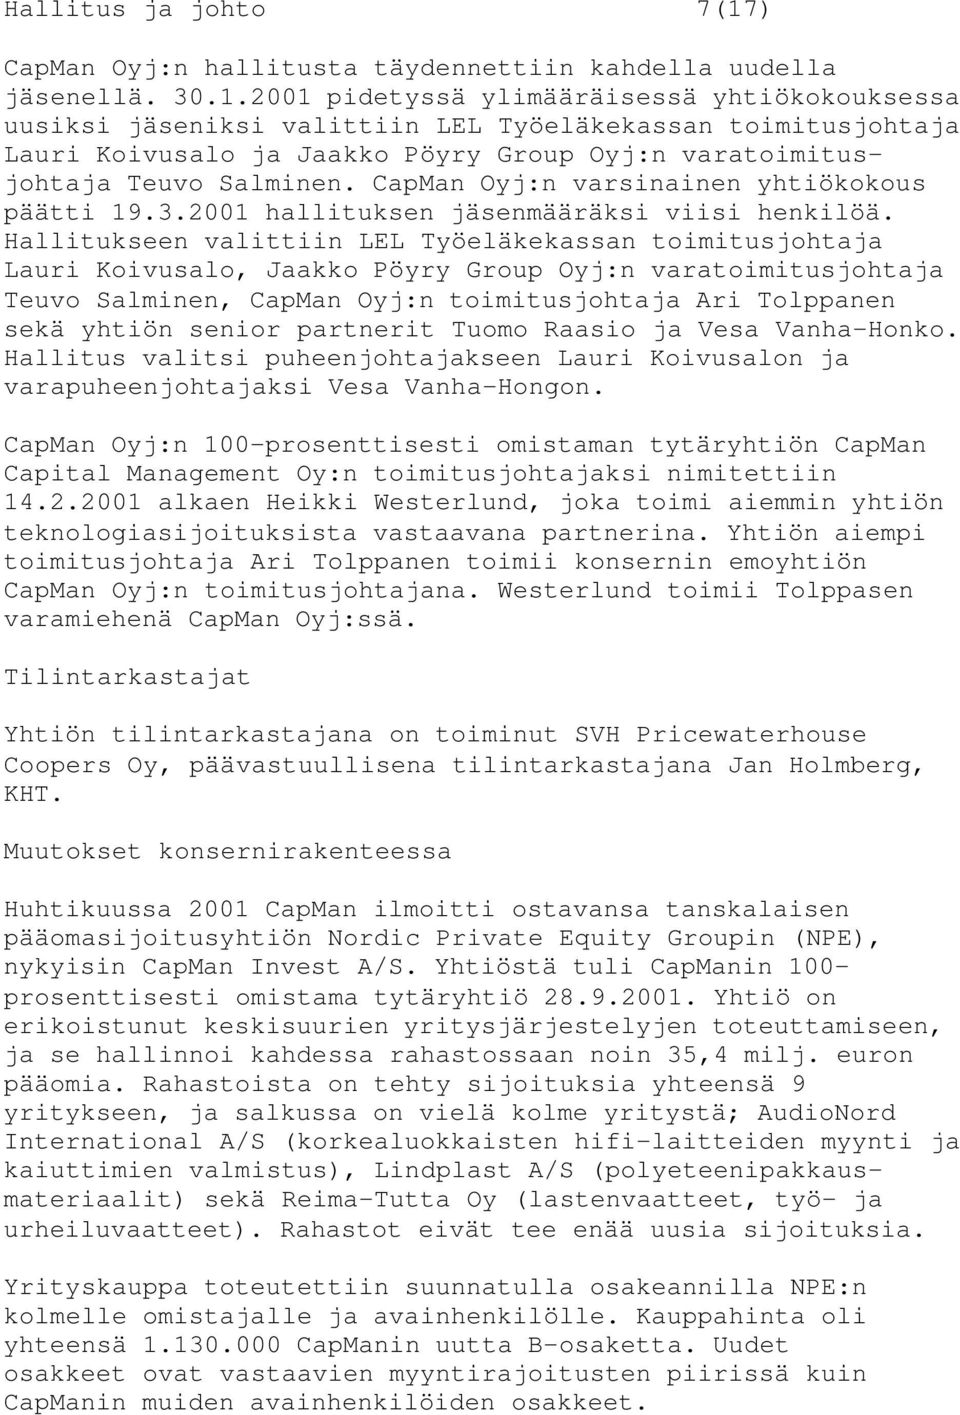 2001 pidetyssä ylimääräisessä yhtiökokouksessa uusiksi jäseniksi valittiin LEL Työeläkekassan toimitusjohtaja Lauri Koivusalo ja Jaakko Pöyry Group Oyj:n varatoimitusjohtaja Teuvo Salminen.